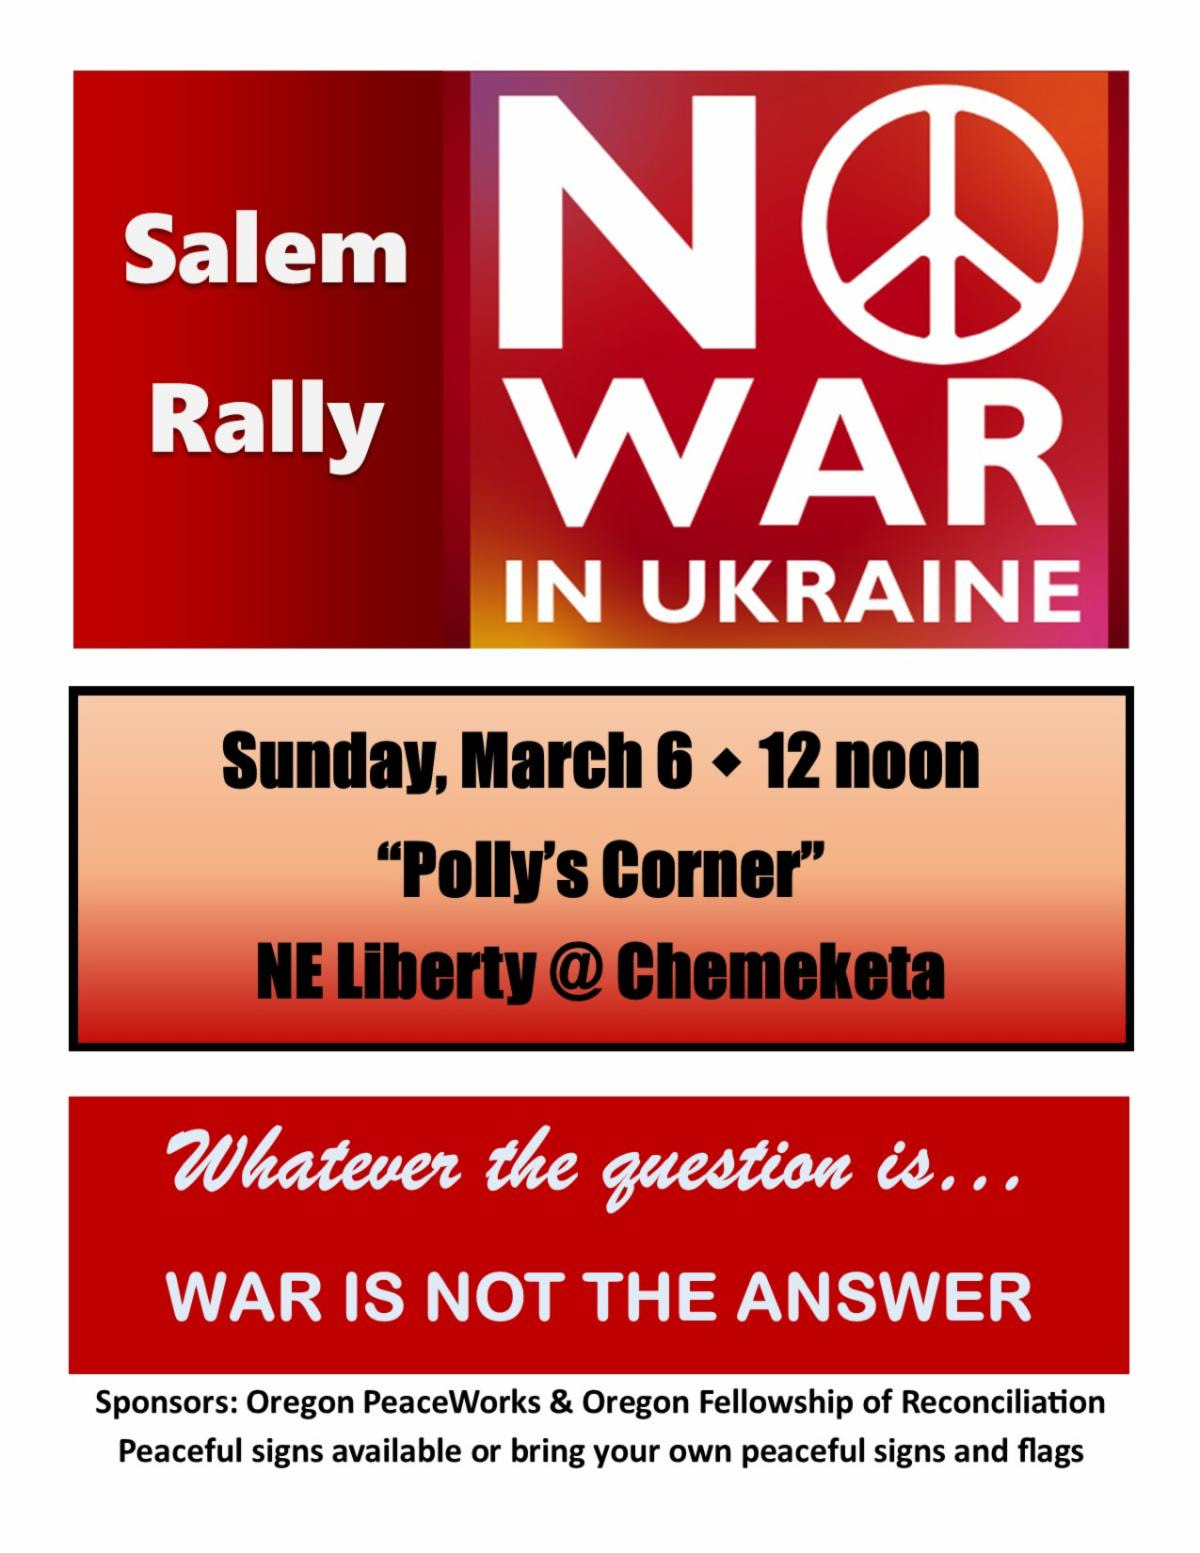 No hay guerra en Ucrania Gráfico de rally de Salem. Cualquiera que sea la pregunta... La guerra no es la respuesta.